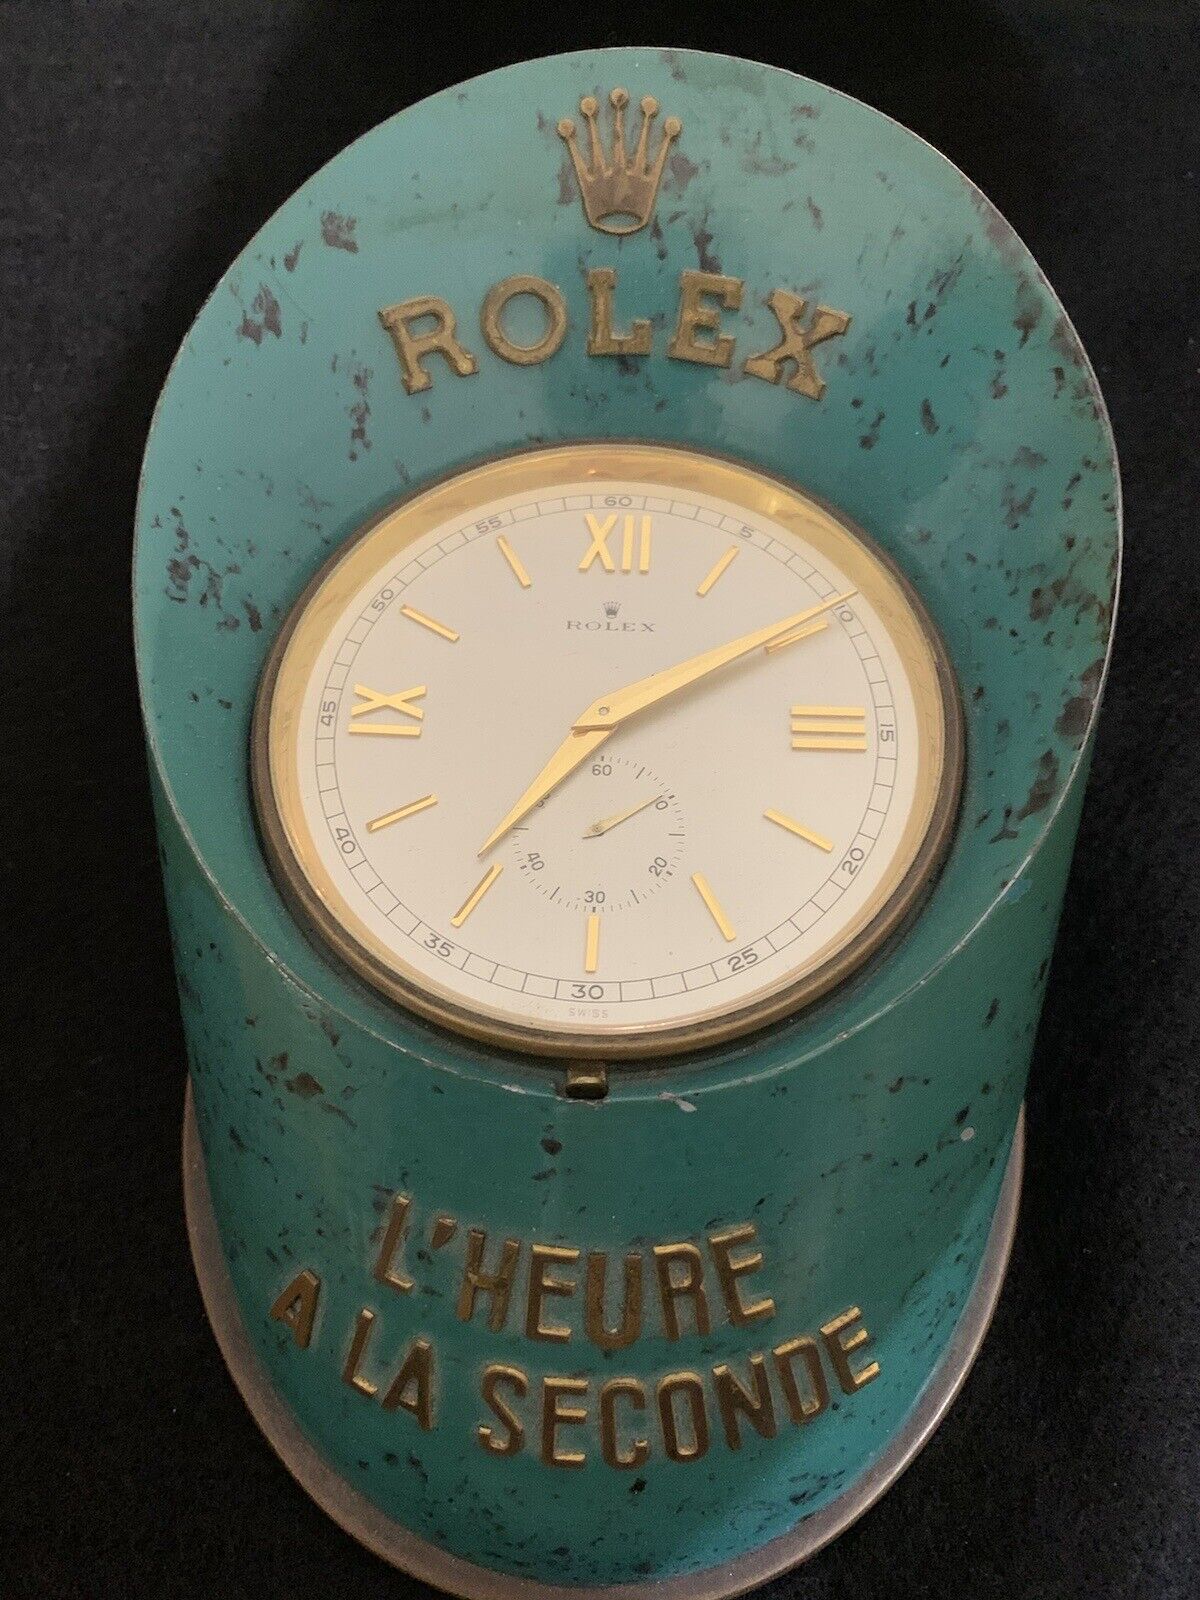 Rolex L’HEURE A LA SECONDE, GILT BRASS AND GREEN SOFT ENAMEL DESK CLOCK, NO.1078